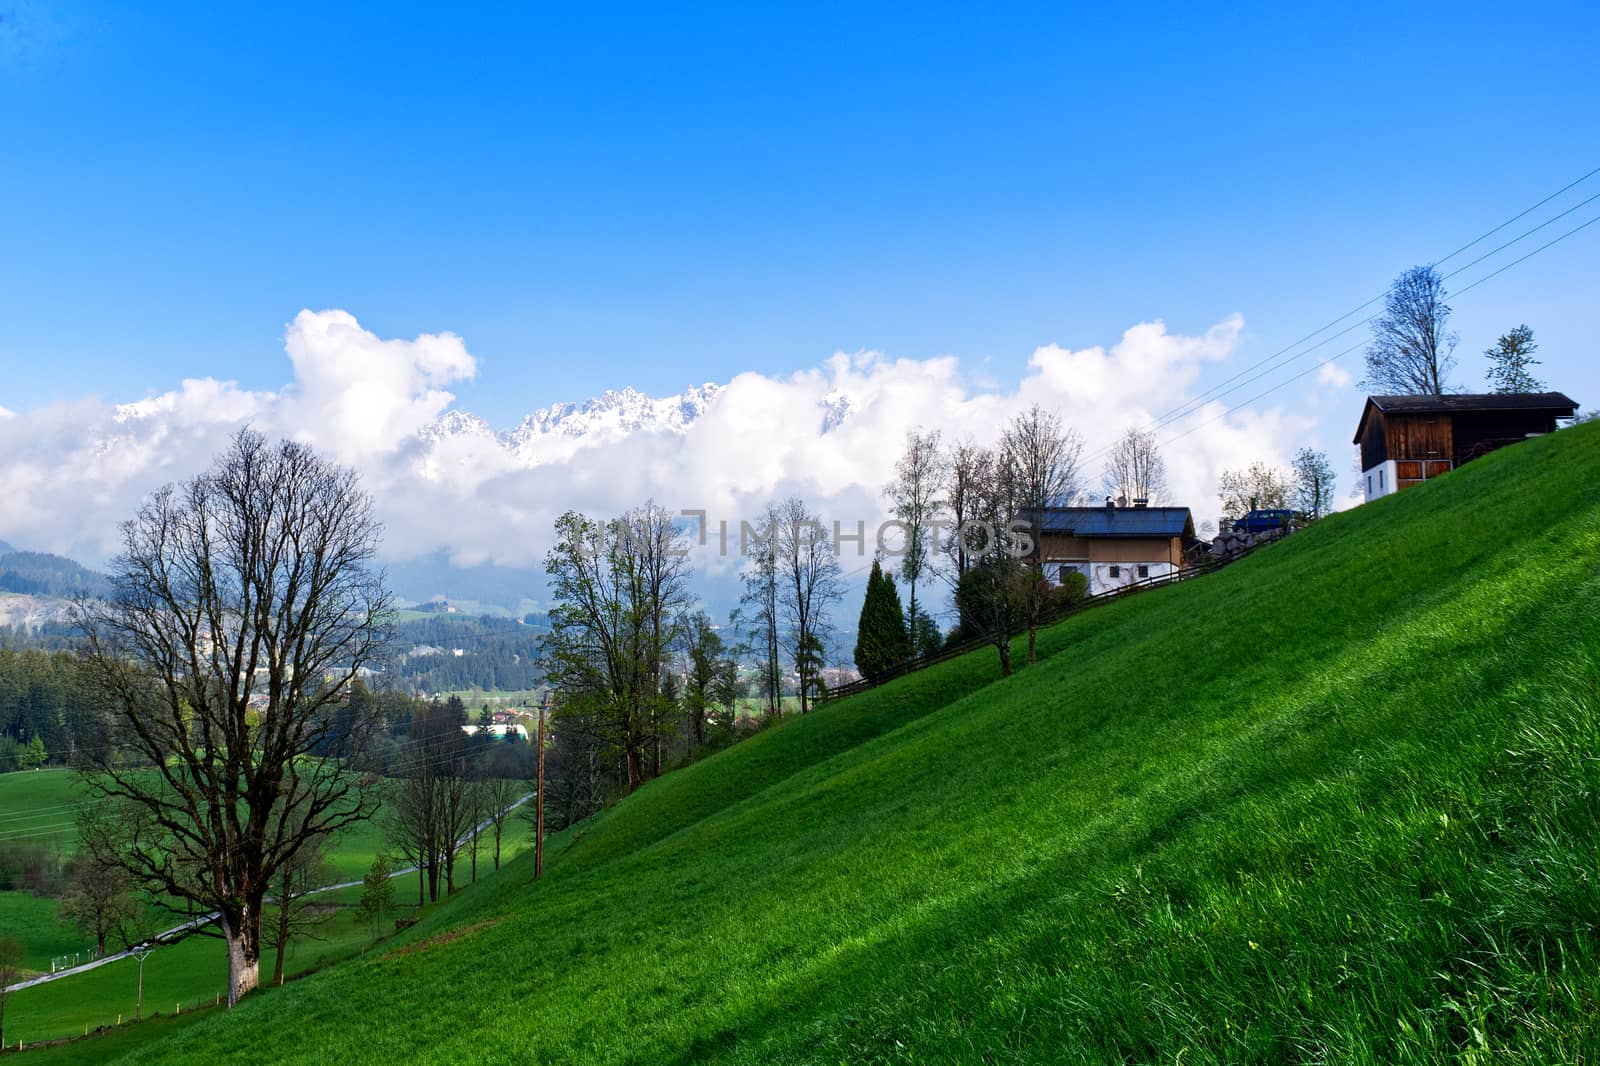 Spring meadow view in Tyrolean alps. Green meadow landscape in Tyrol, Austria